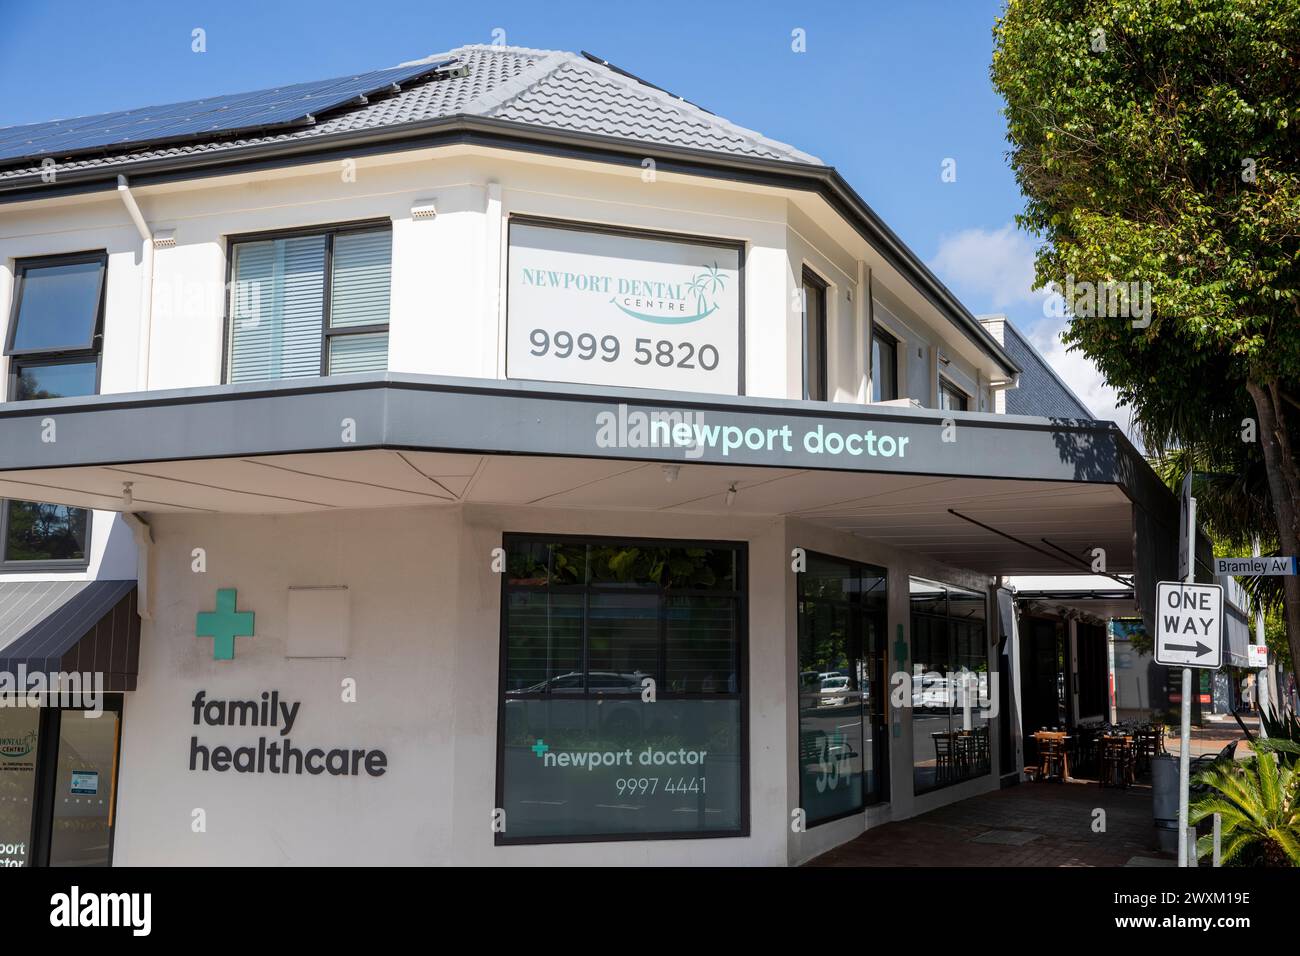 Médecin généraliste australien chirurgie et pratique dentaire combinés, pour les soins de santé familiale dans la banlieue de Sydney de Newport Beach, Nouvelle-Galles du Sud, Australie Banque D'Images